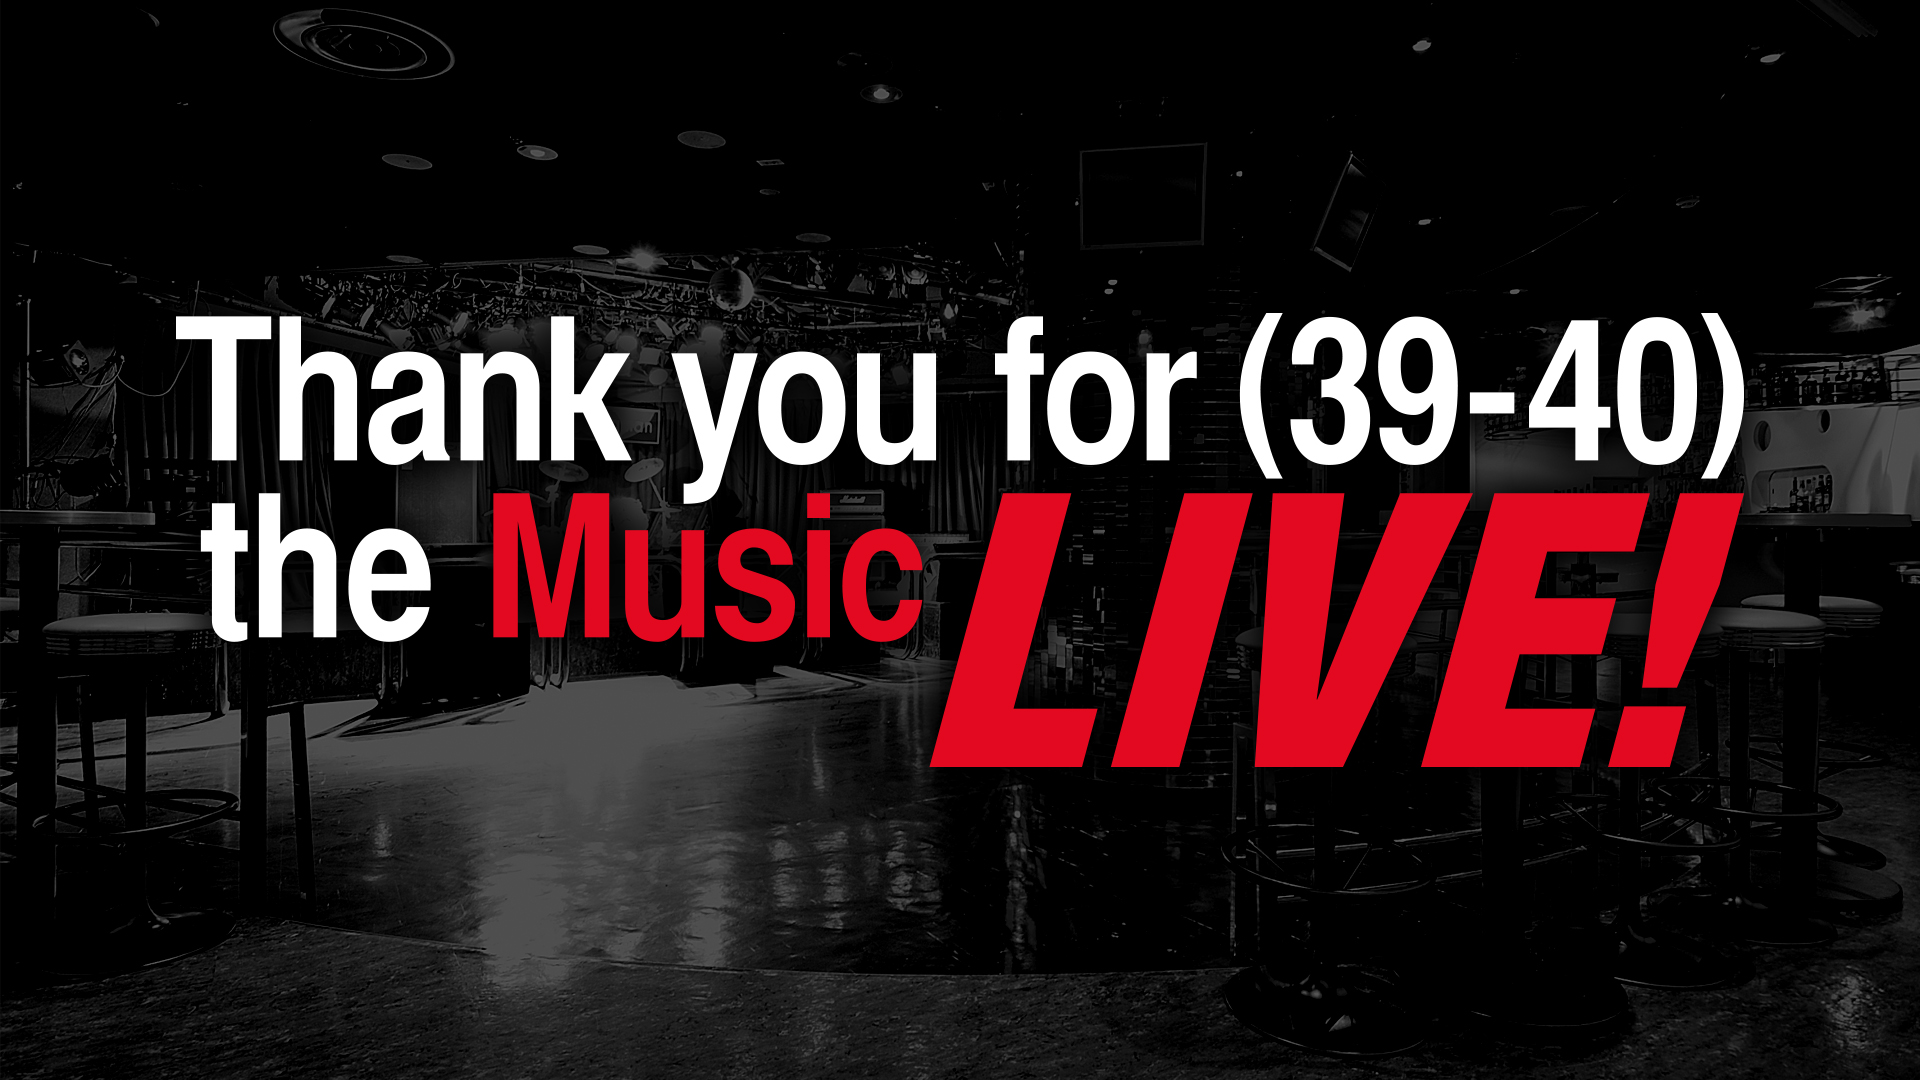 [ ライブレポート ] 配信ライブ「Thank you for 39-40 the music LIVE!」